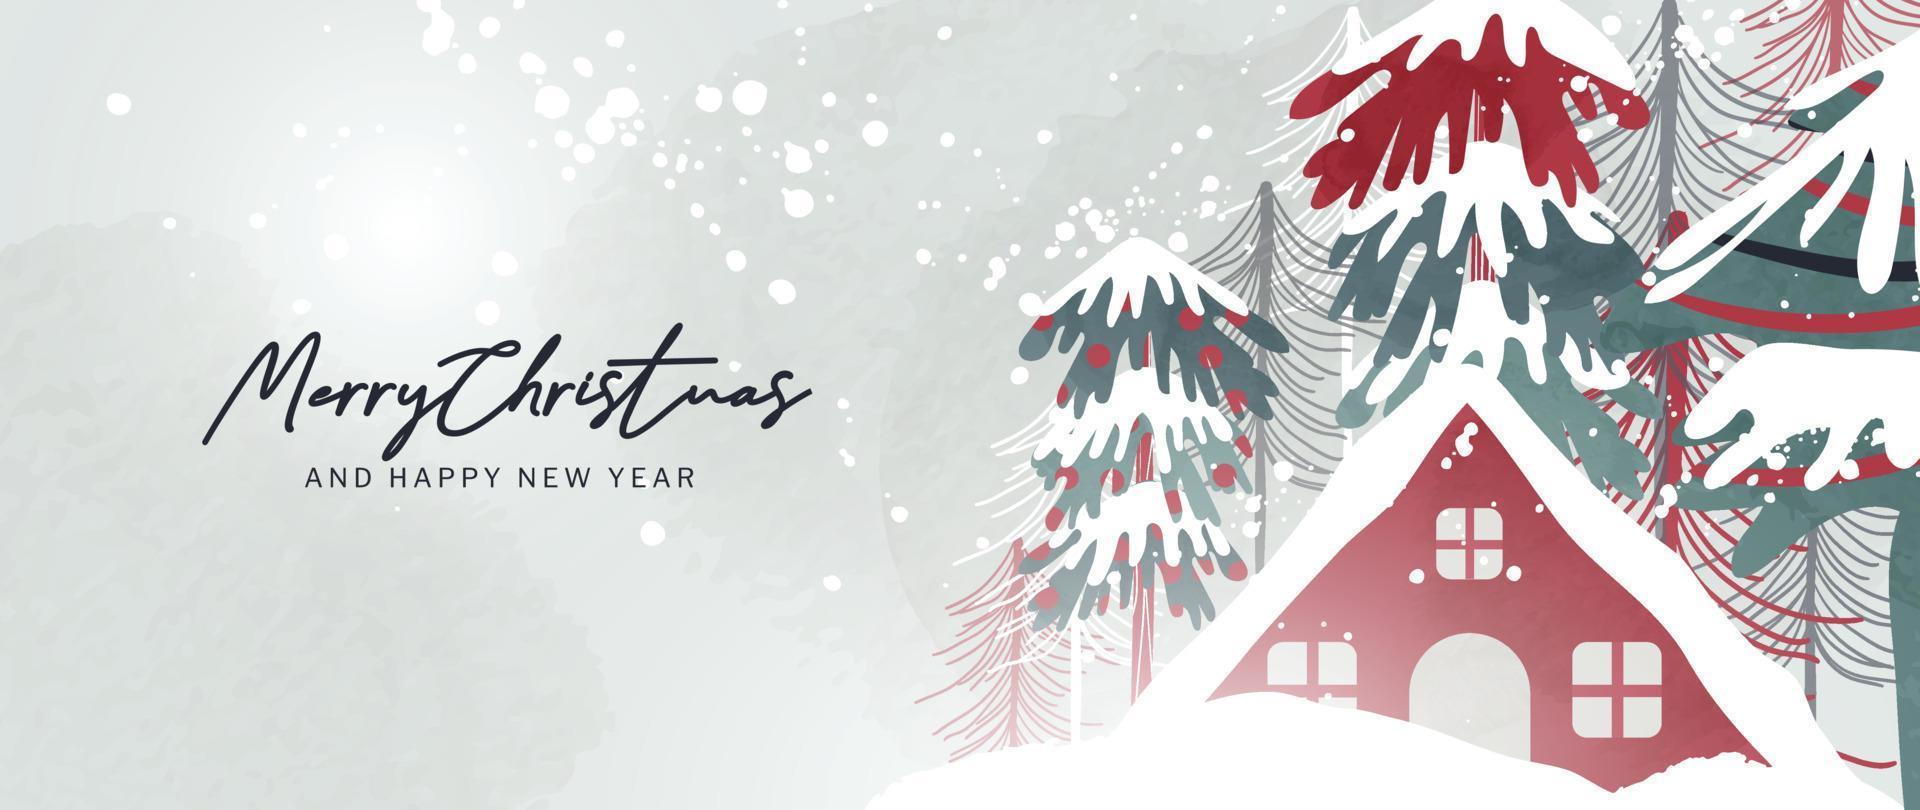 jul och Lycklig ny år bakgrund vektor illustration. hand målad dekorativ vinter- snöig landskap, snöfall, hus, tall träd. design för skriva ut, dekoration, affisch, tapet, baner.